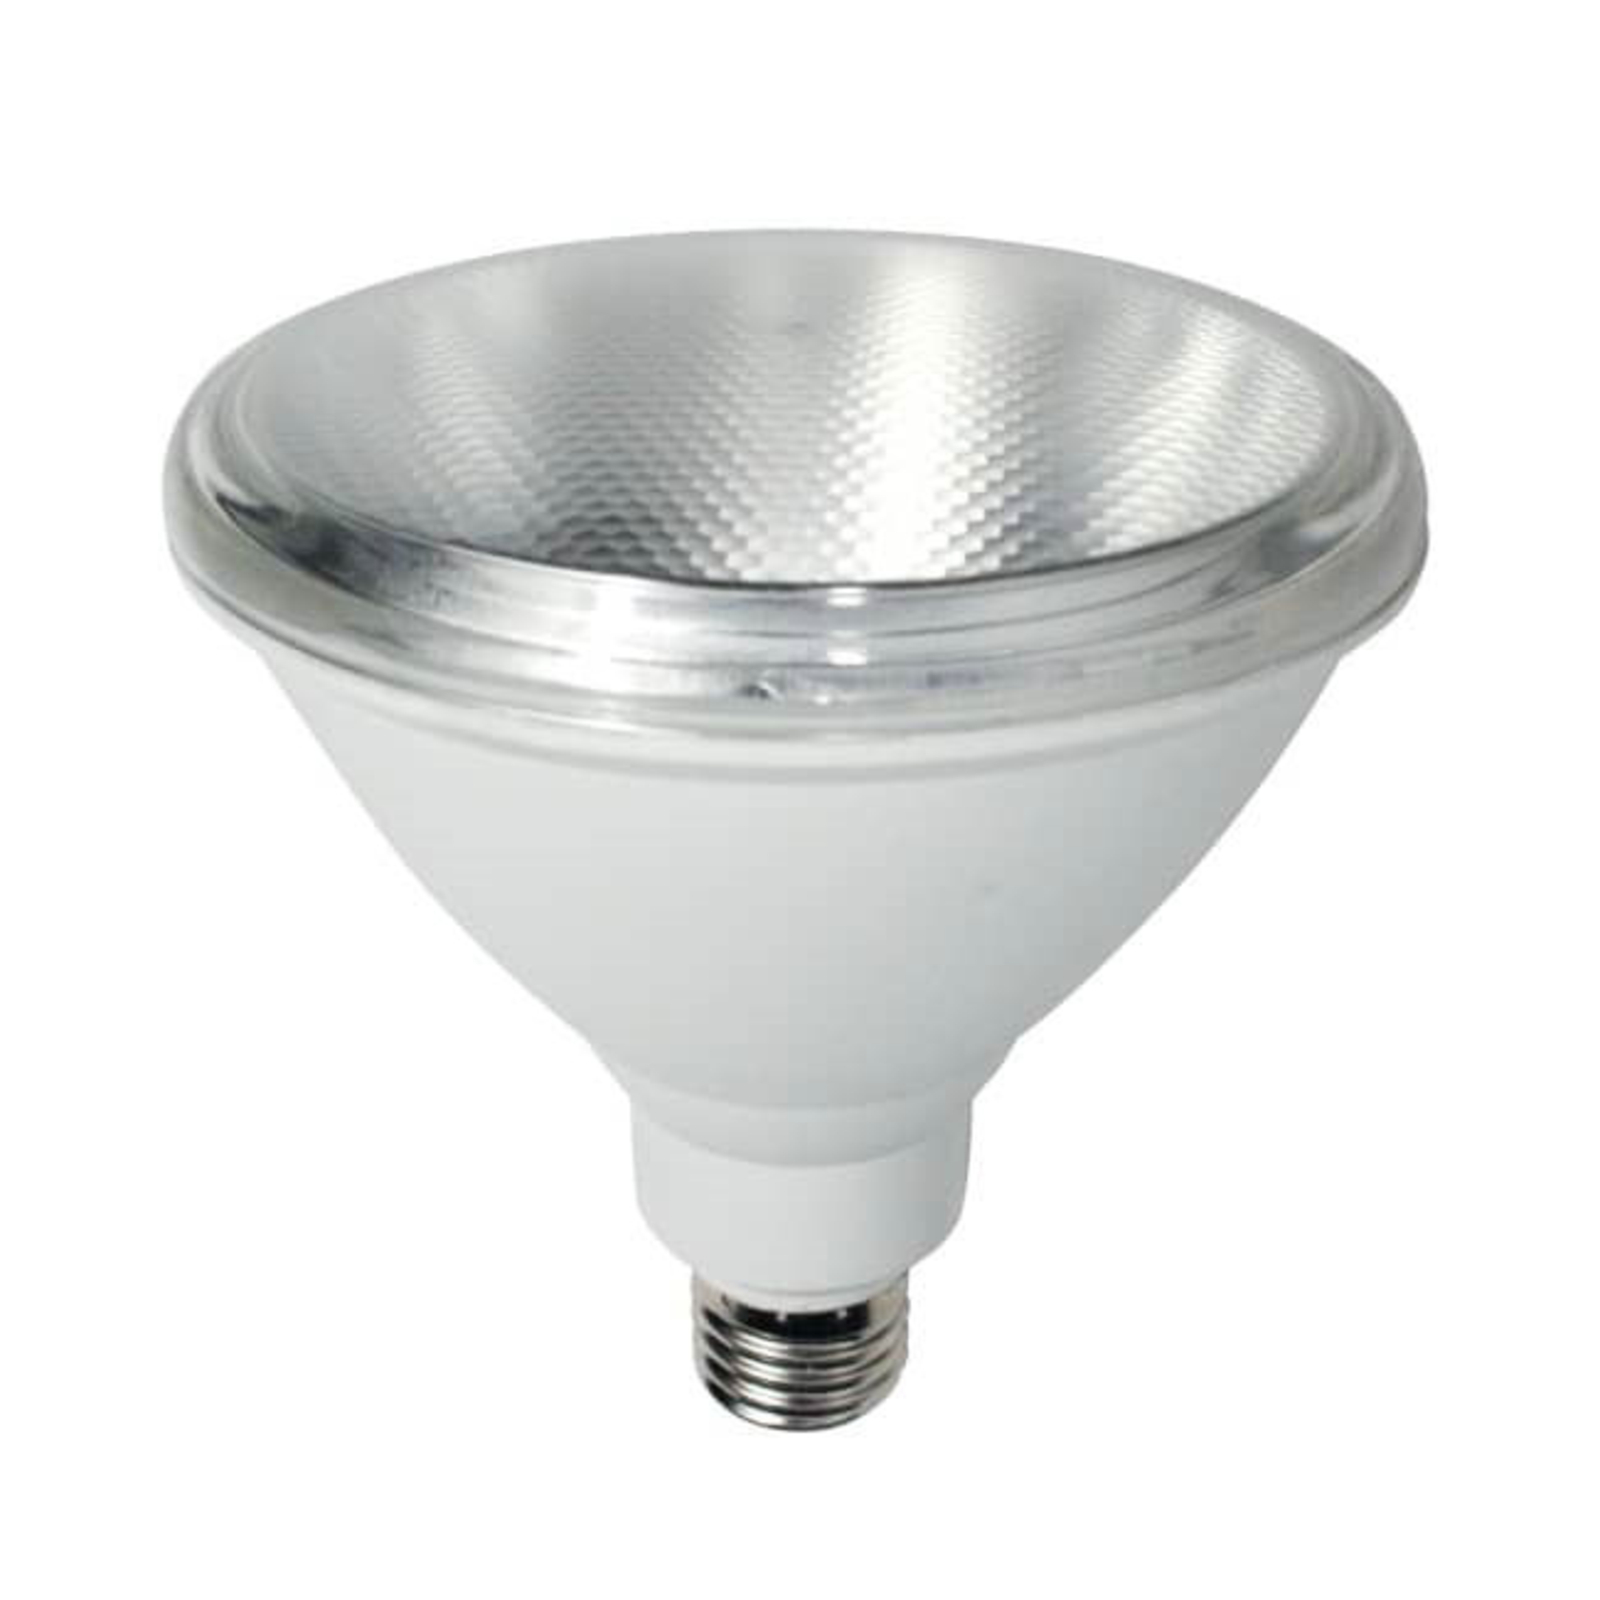 Grow light LED bulb E27 PAR38 10 W full spectrum